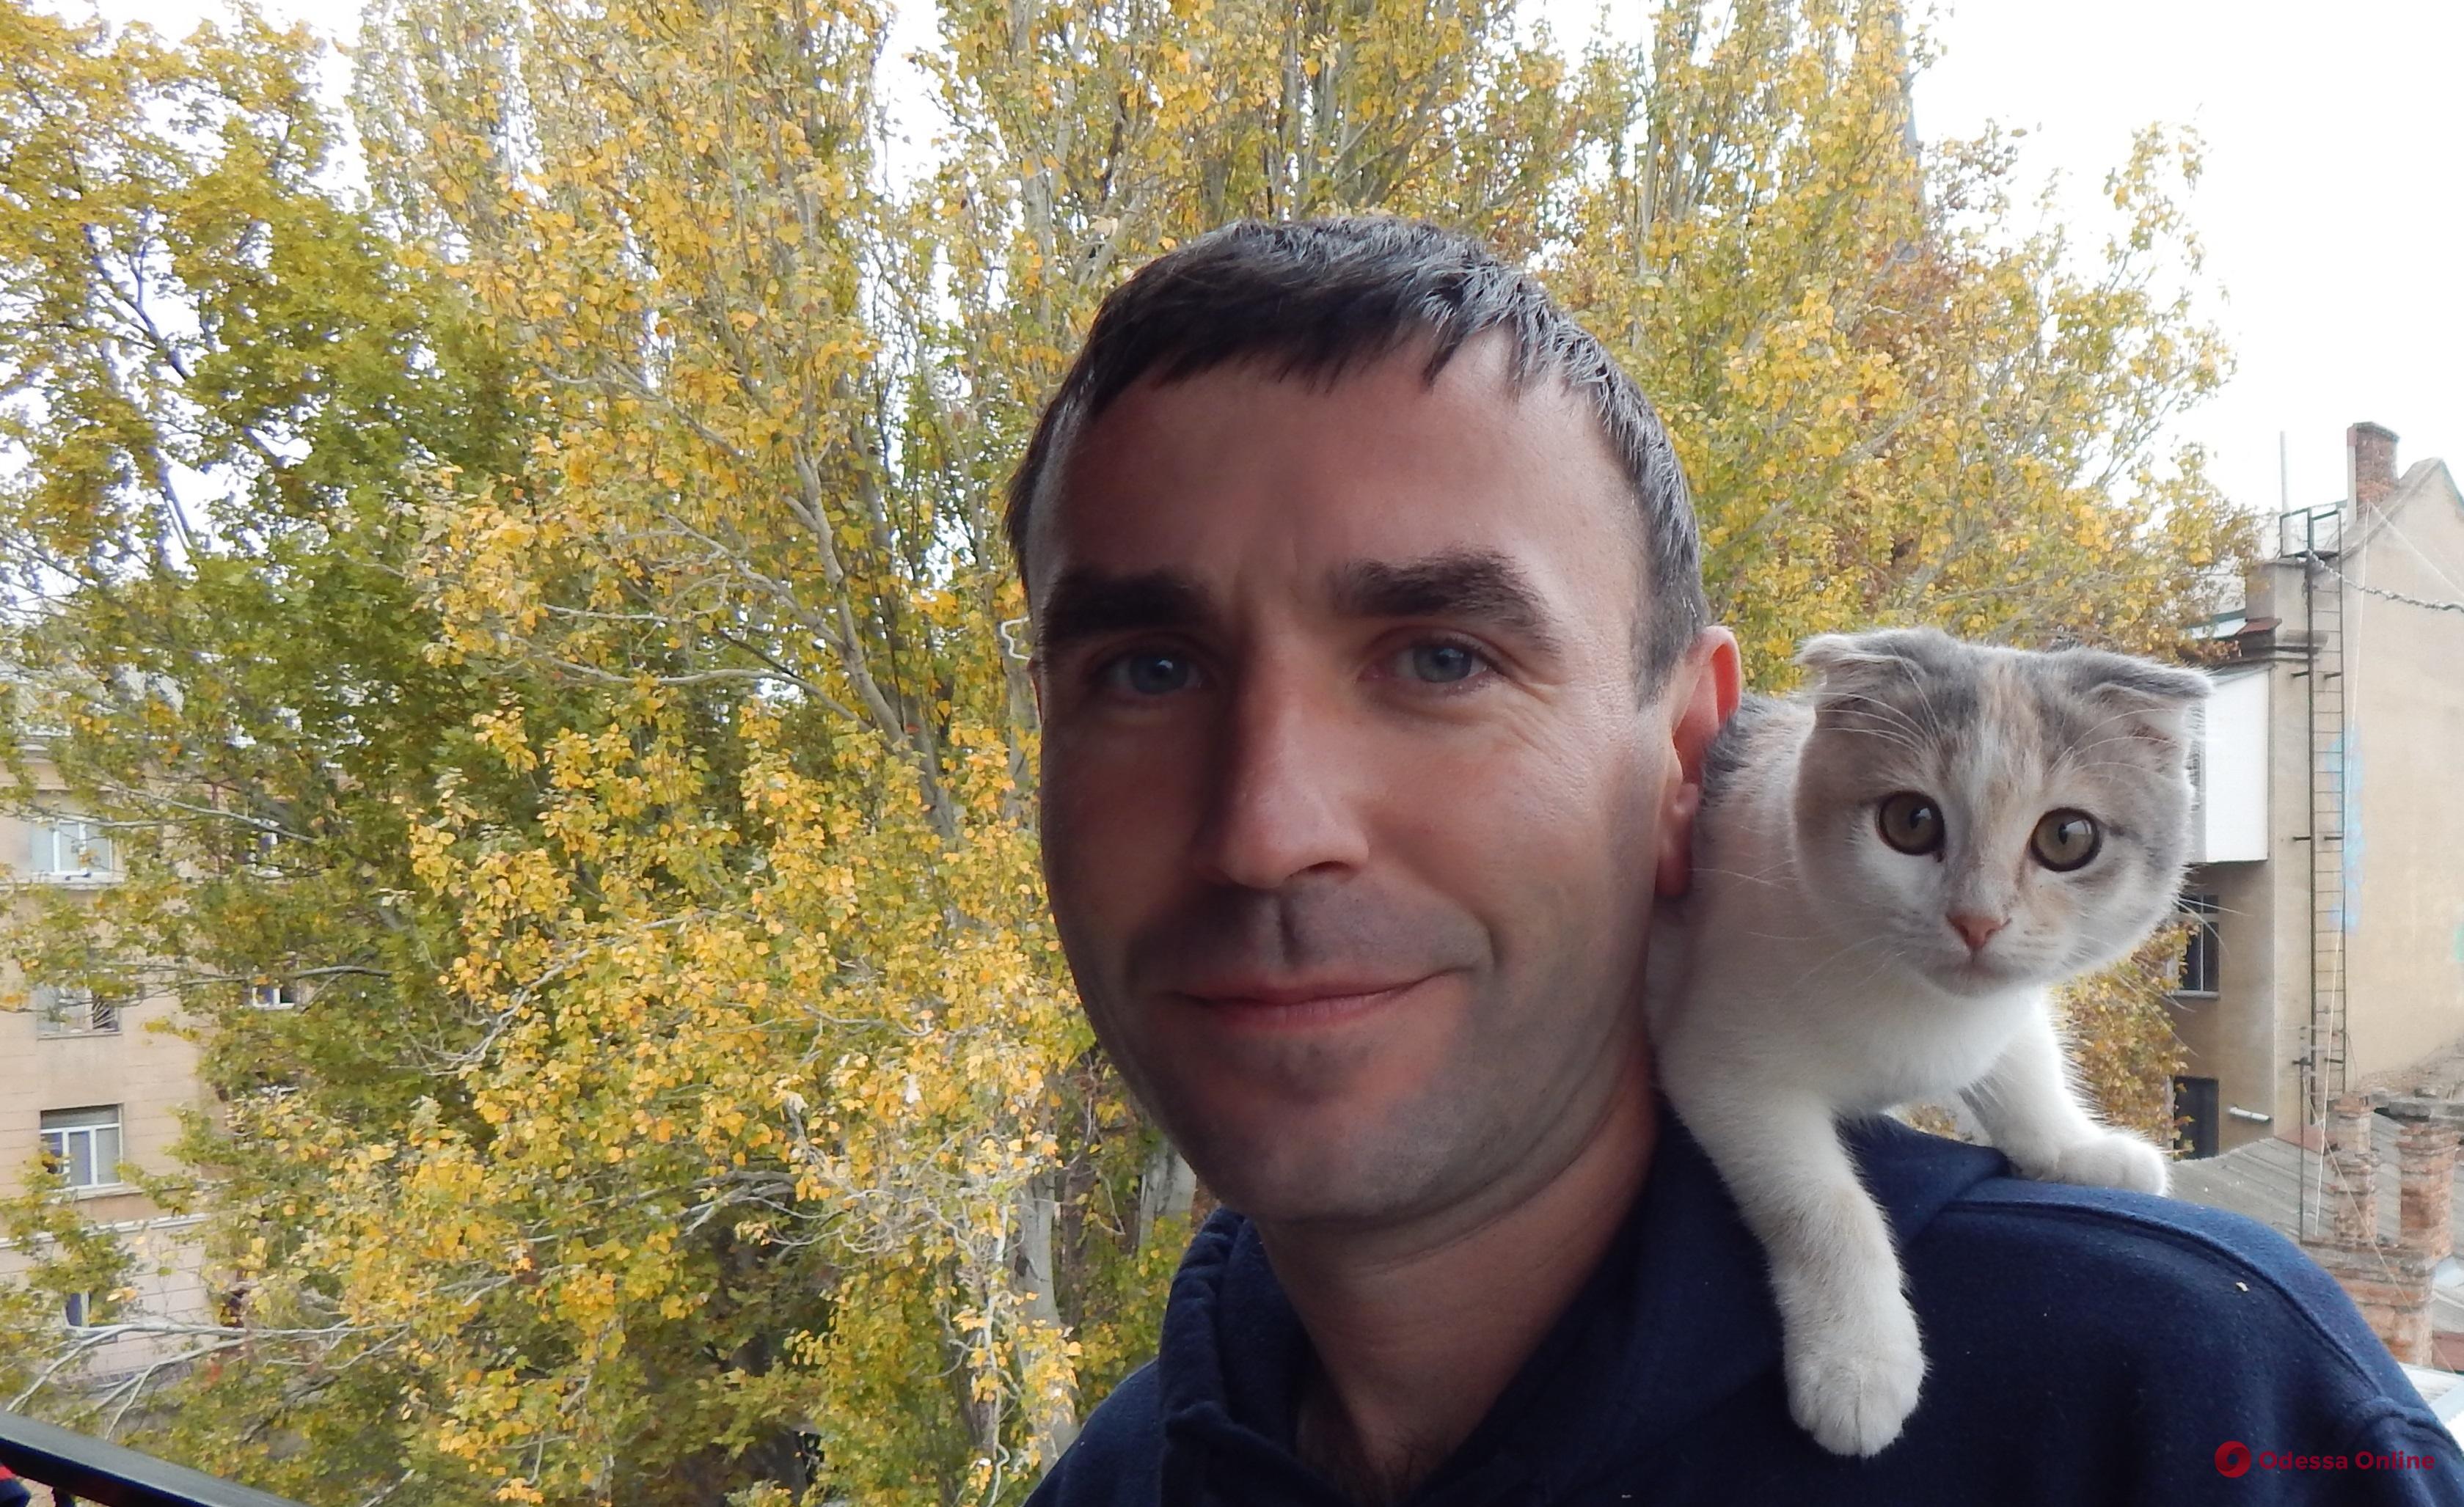 Брати-«урагани», людина з найдовшим волоссям в Одесі та кішка-мандрівниця по «горячих точках»: як живе притулок для переселенців